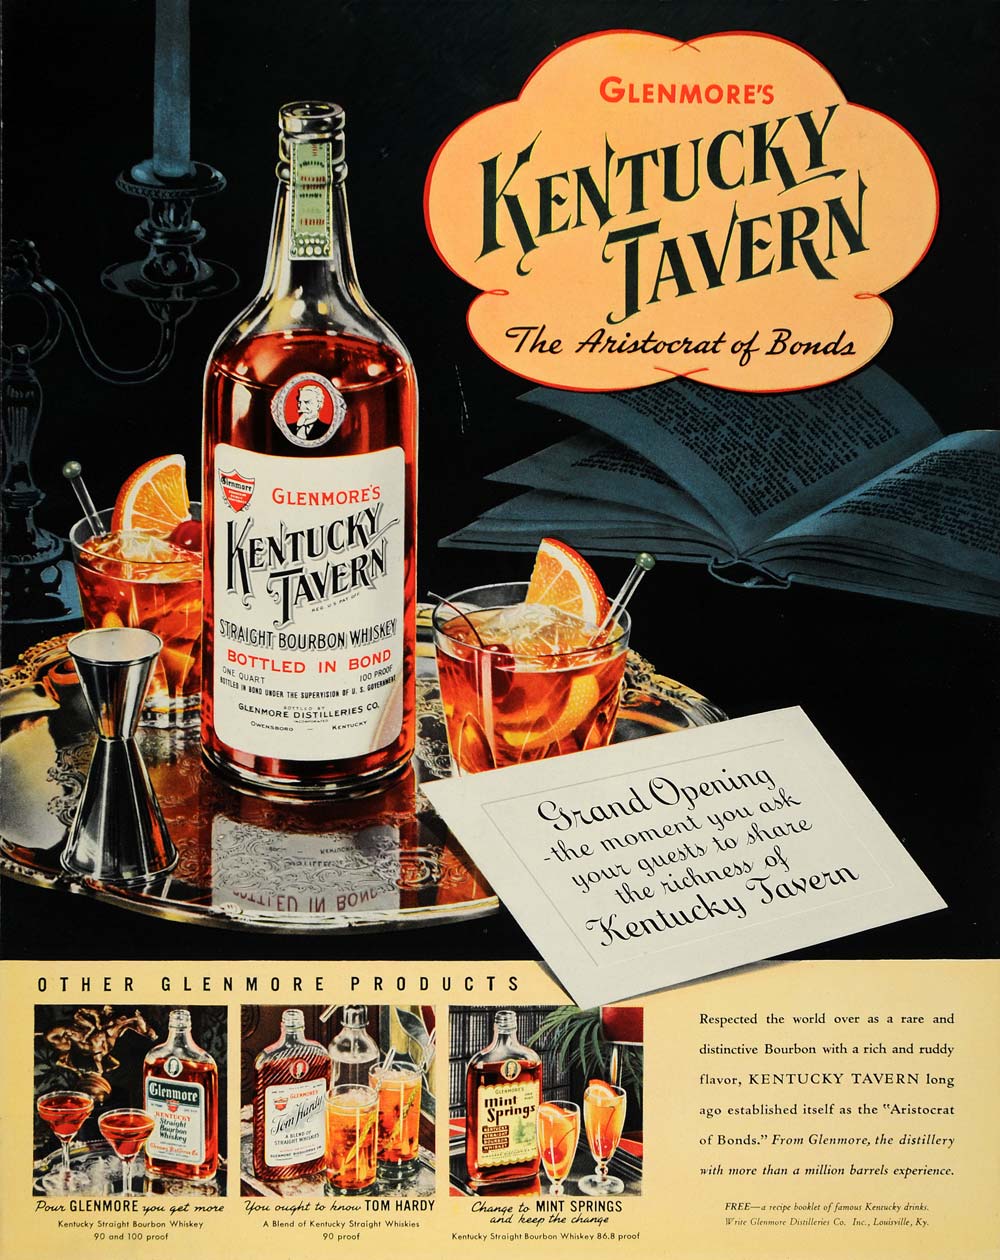 1940 Ad Kentucky Tavern Bourbon Whiskey Alcohol Liquor - ORIGINAL F4A